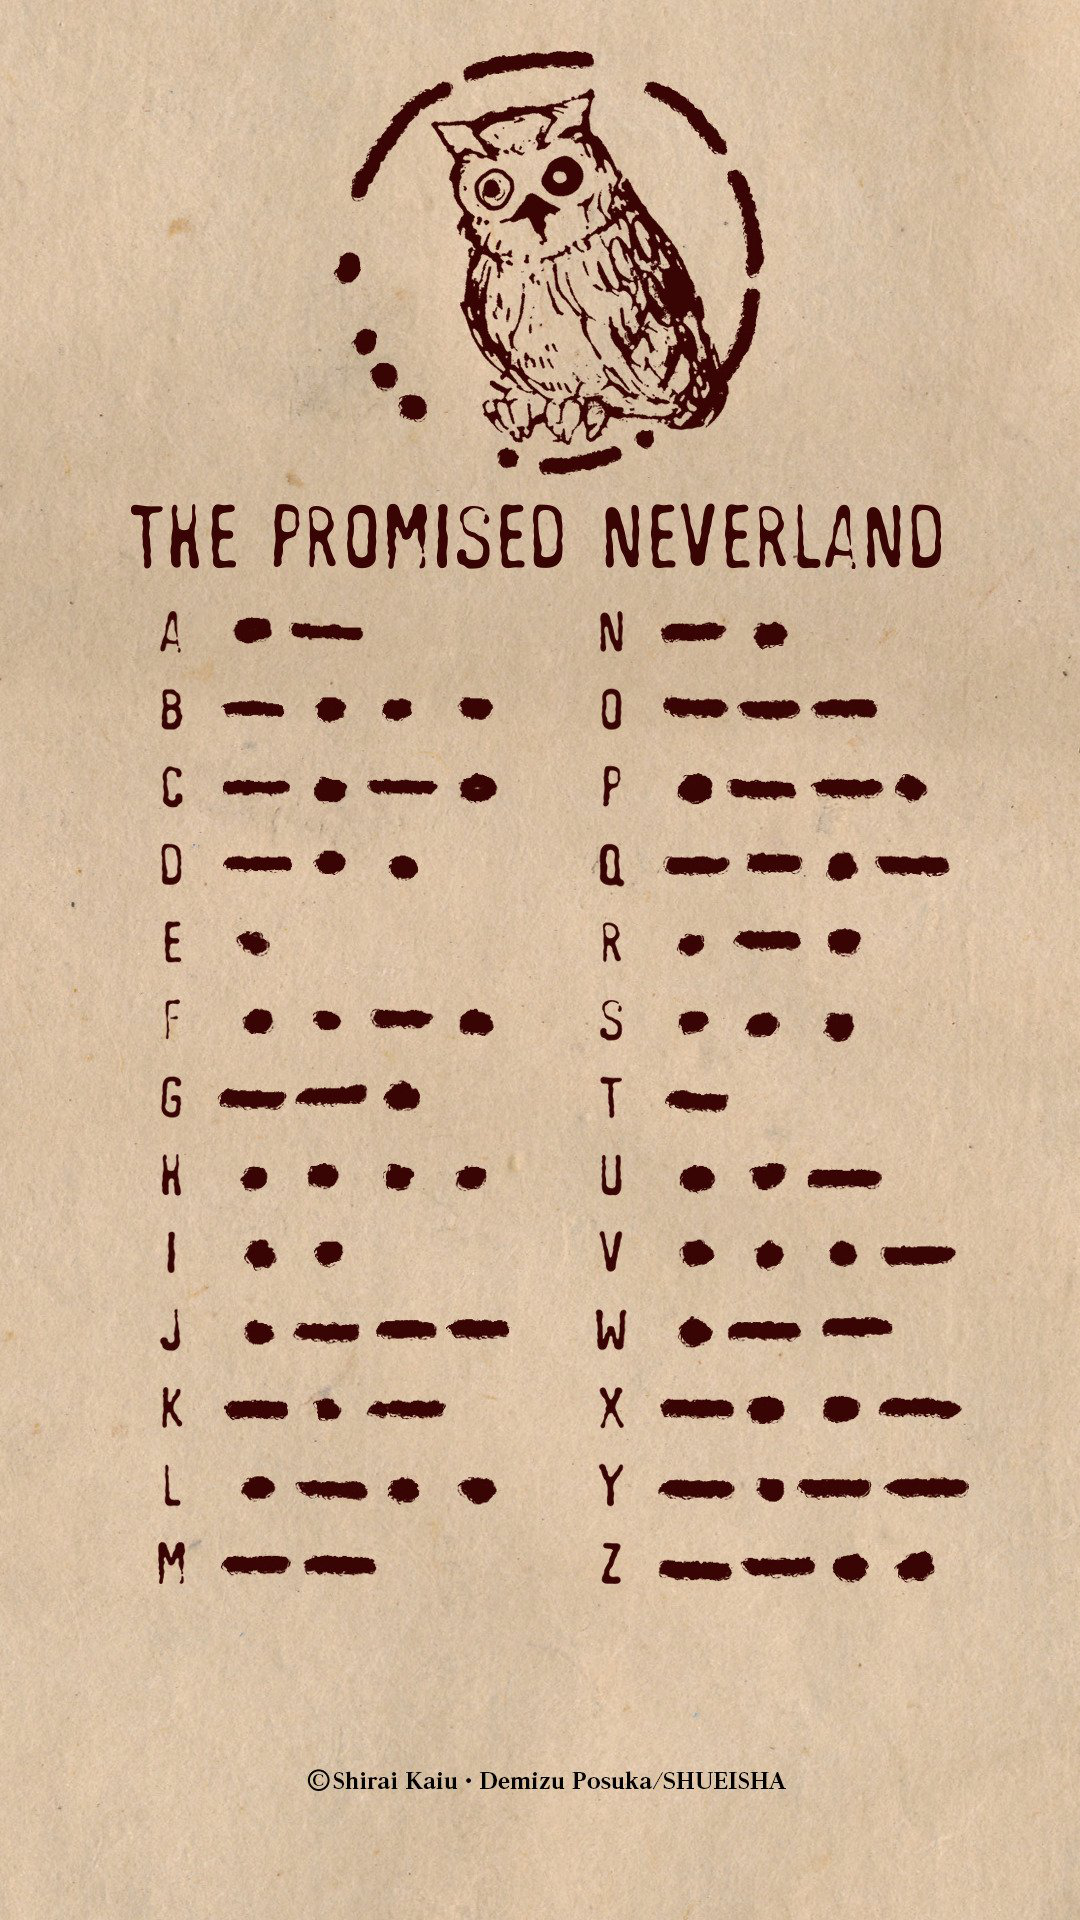 Morse code - Wikipedia